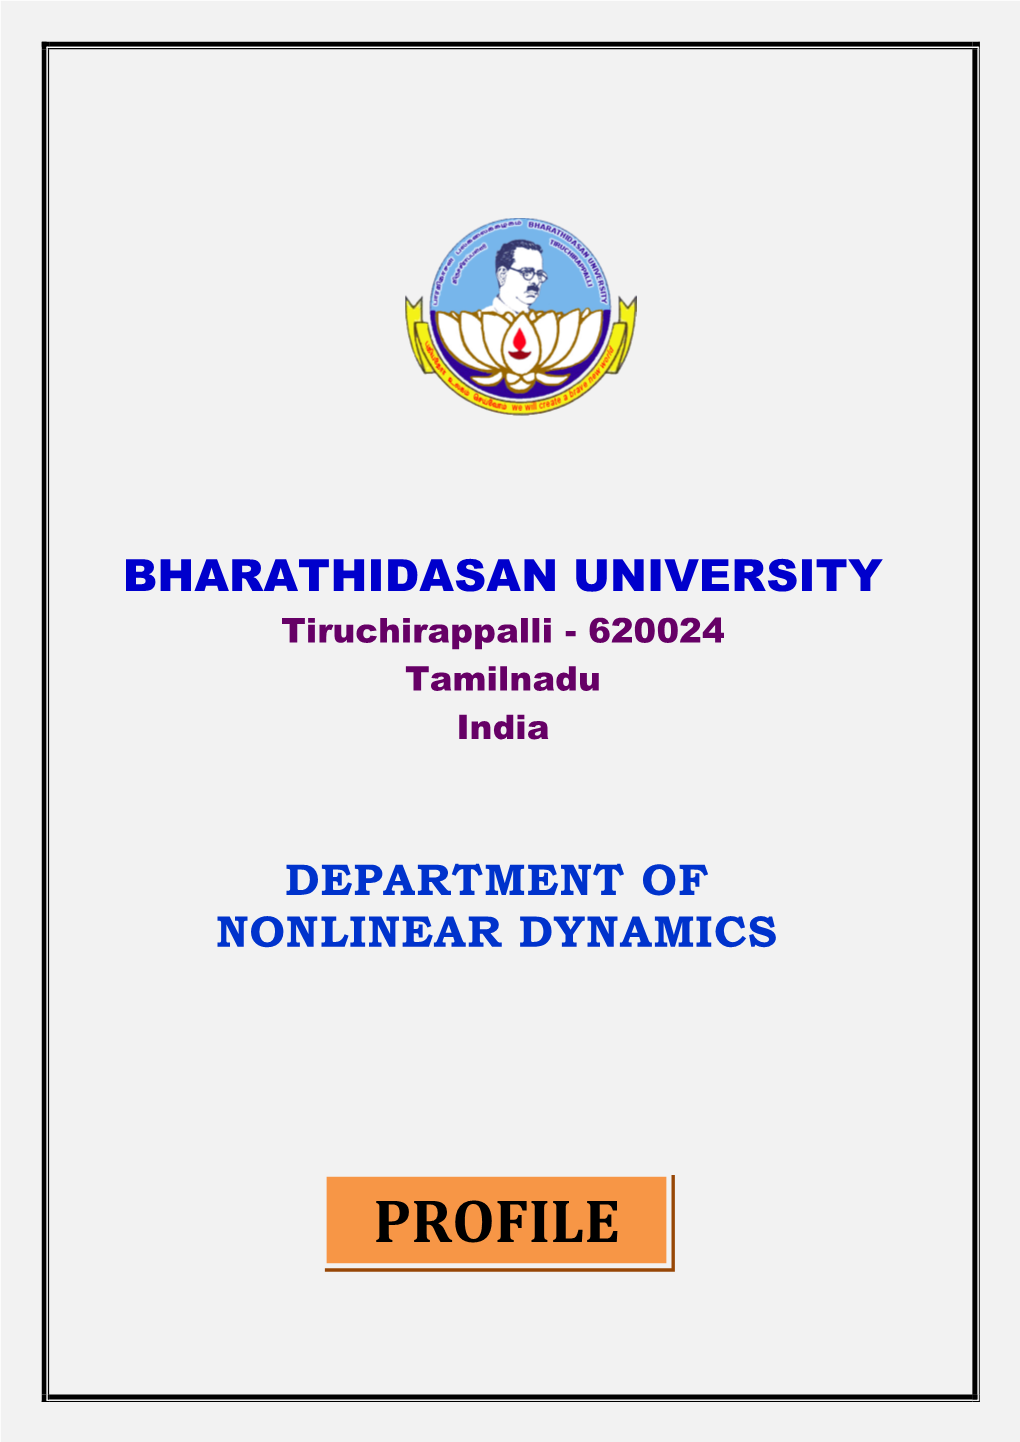 Department Profile